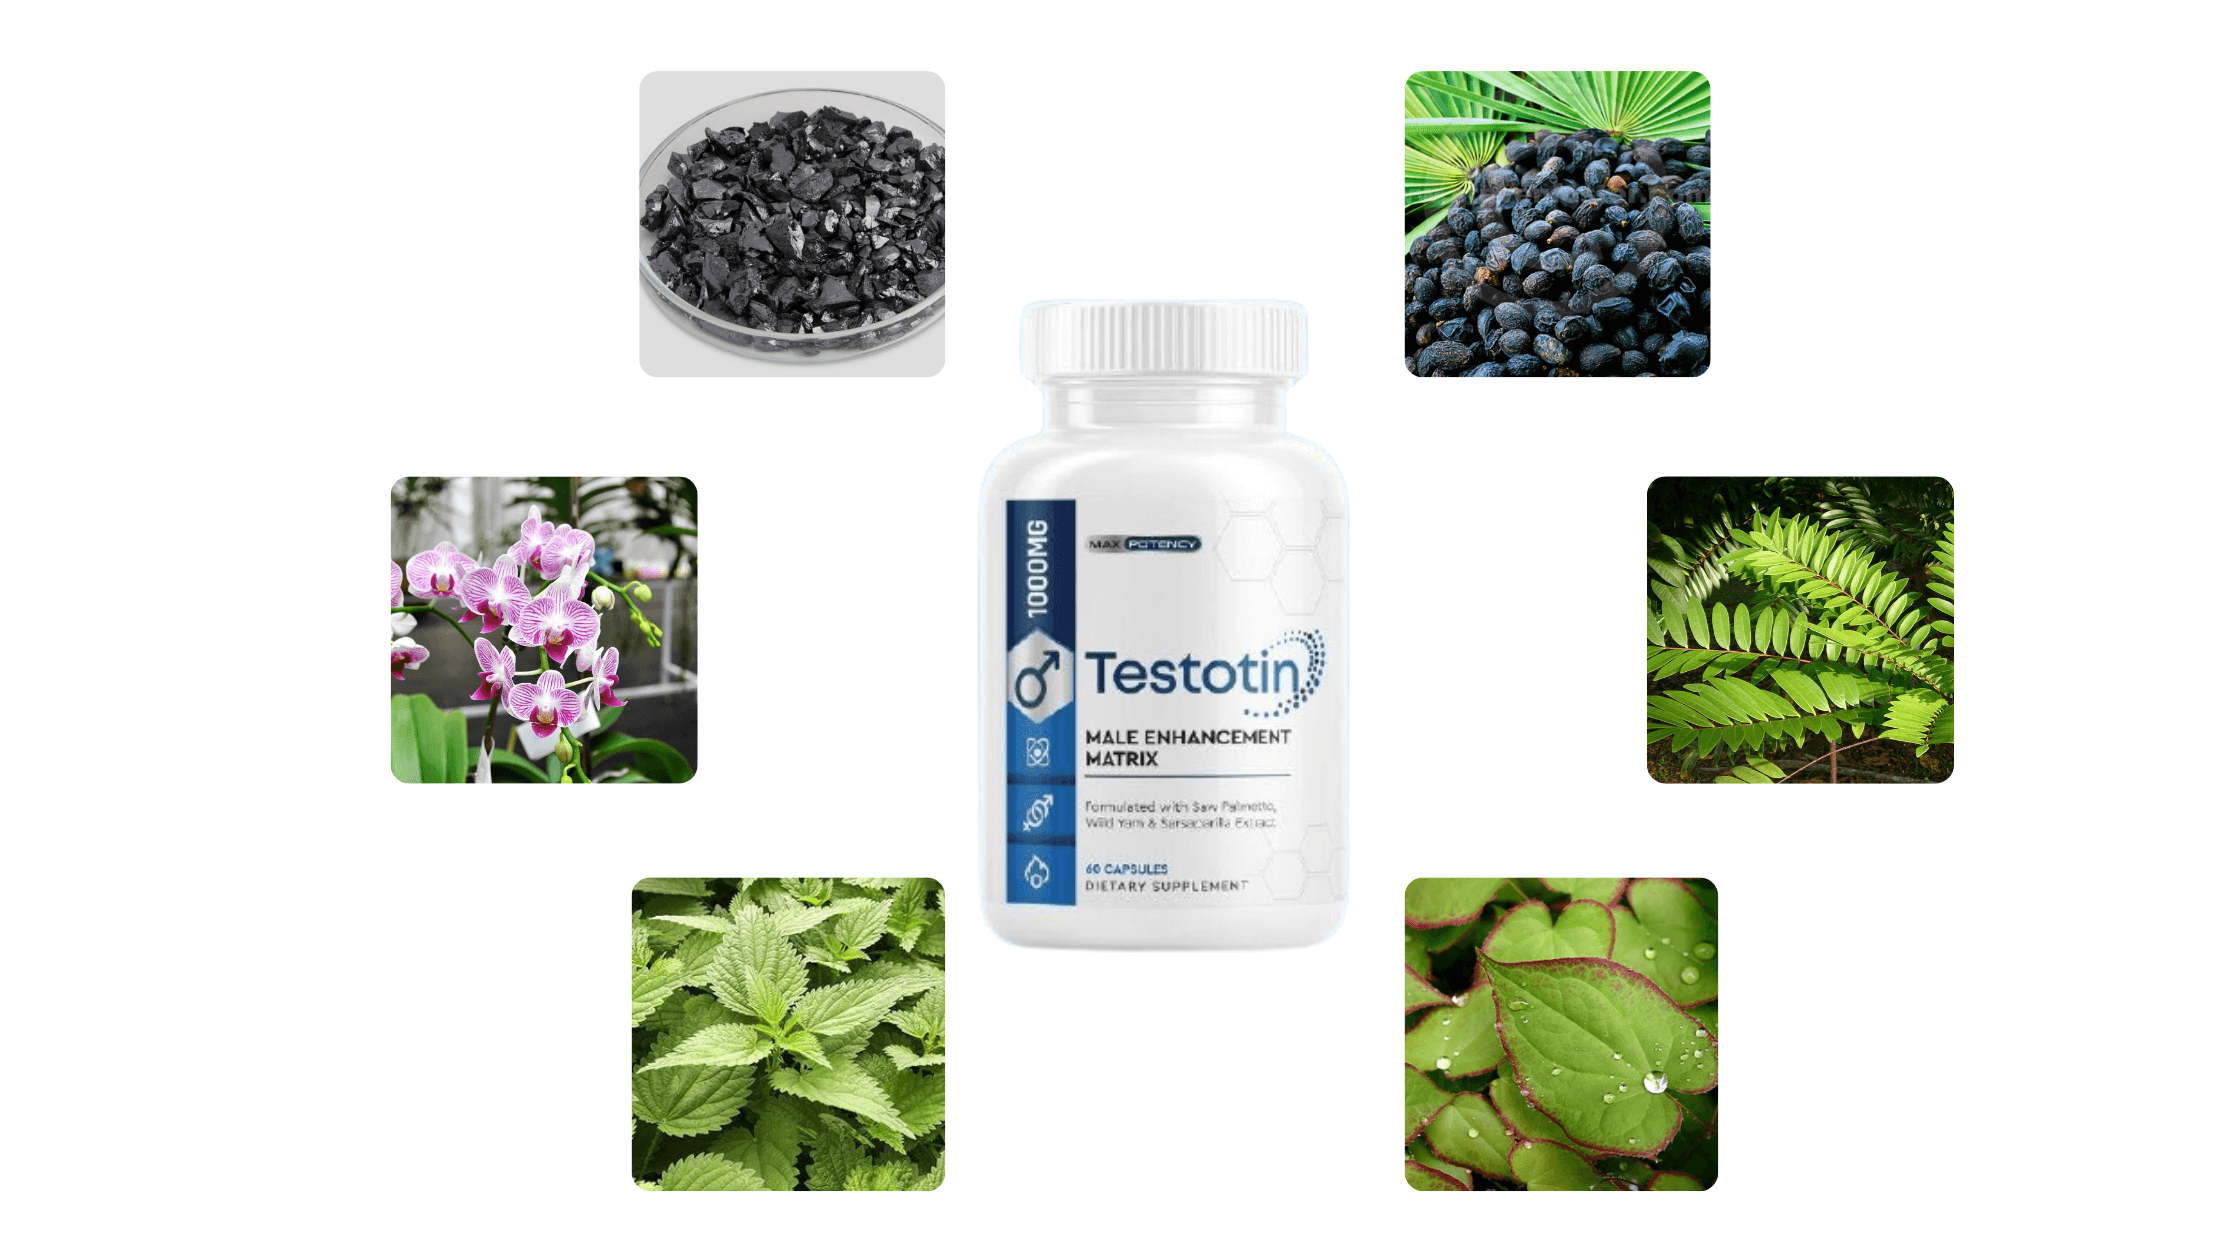 Testotin Ingredients